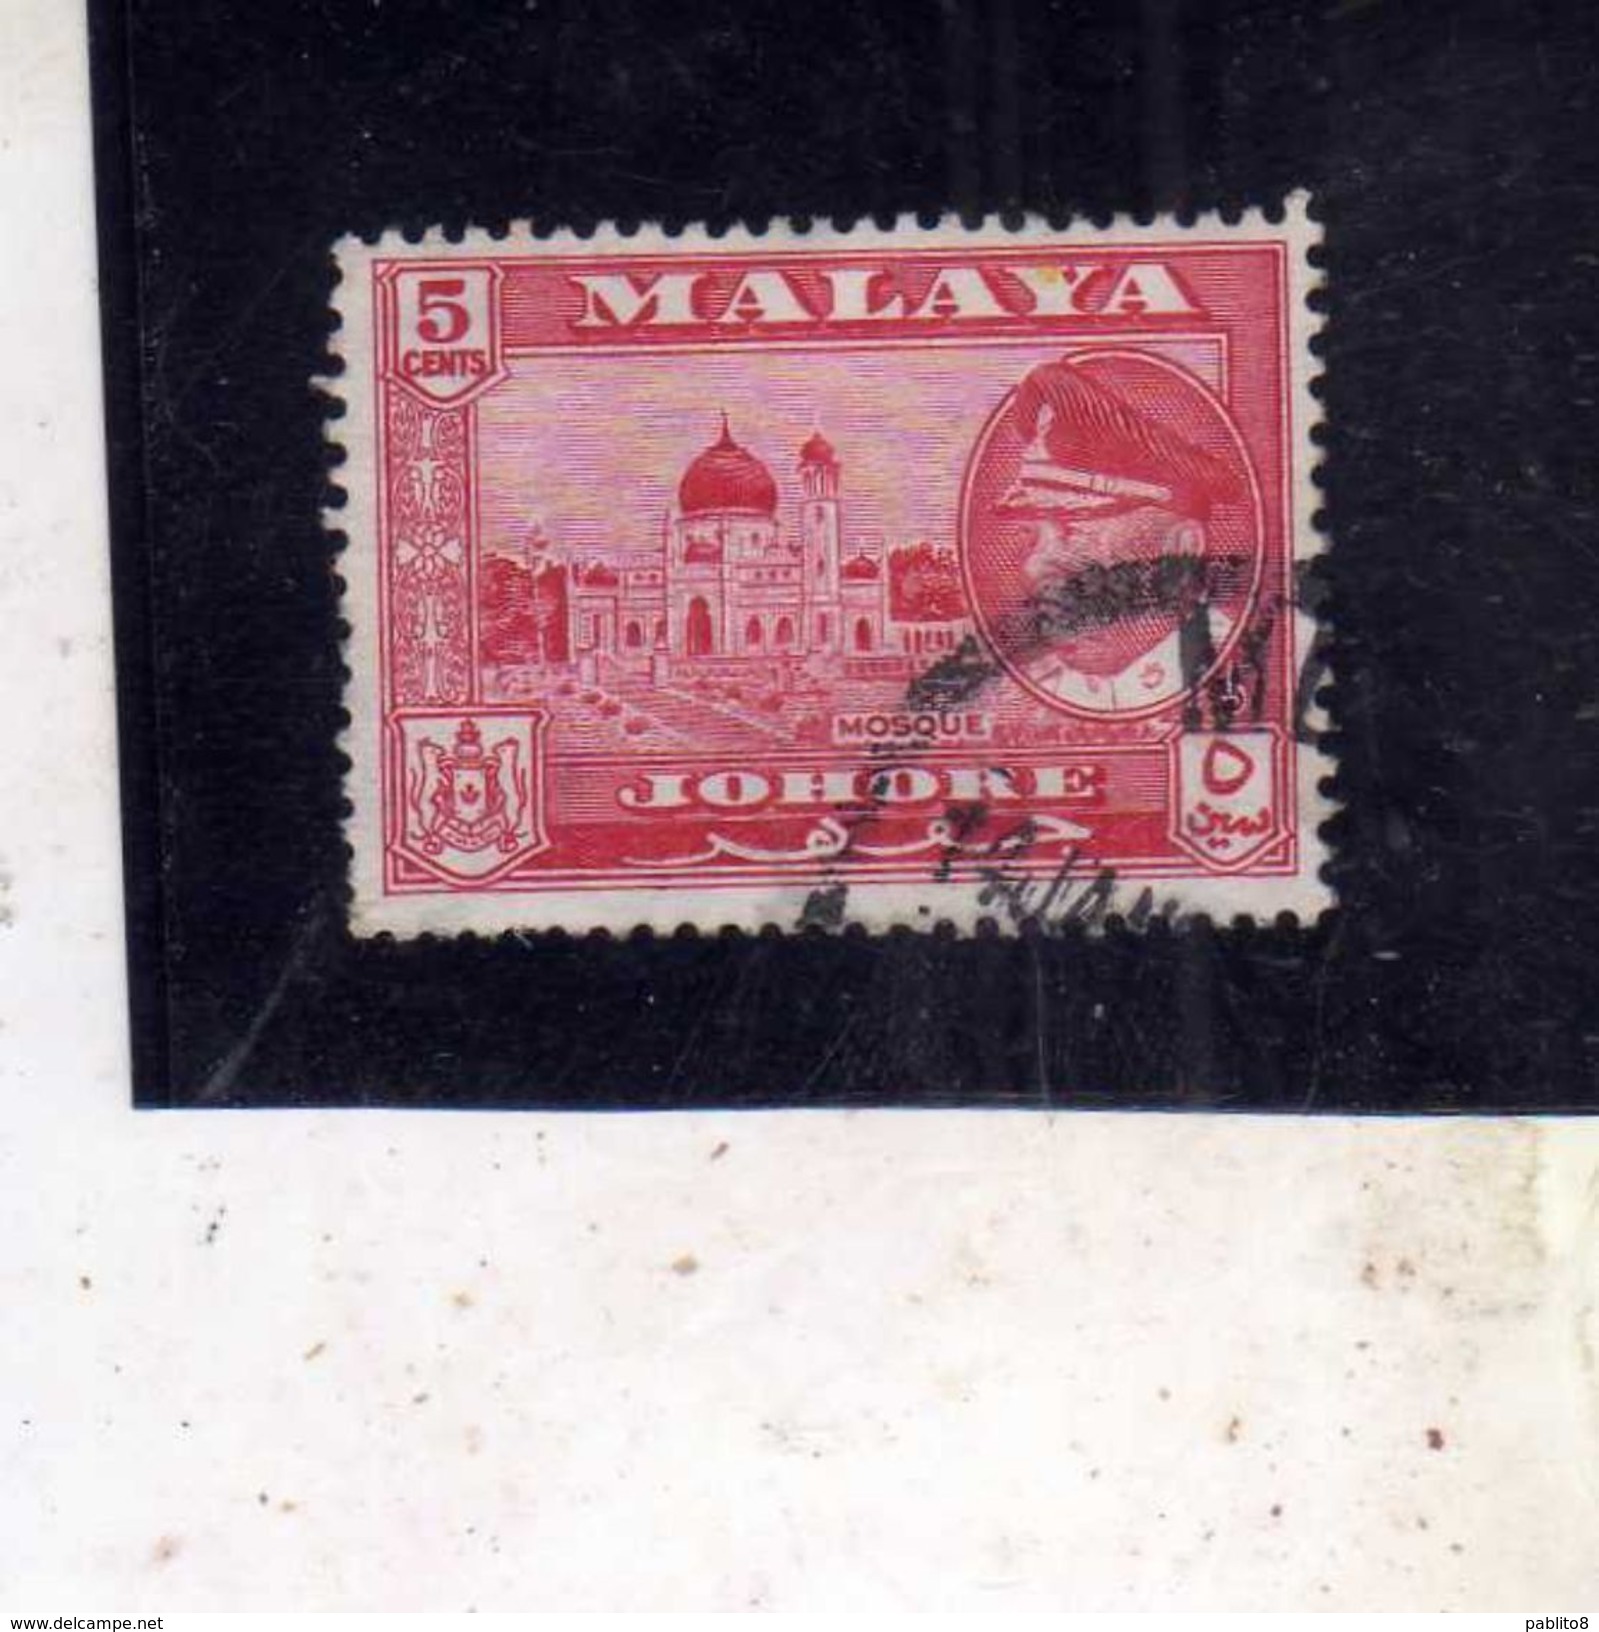 MALAYA MALAISIE MALESIA JOHORE 1960 SULTAN ISMIAL SULTANO MOSQUE MOSCHEA CENT. 5c USATO USED OBLITERE' - Johore